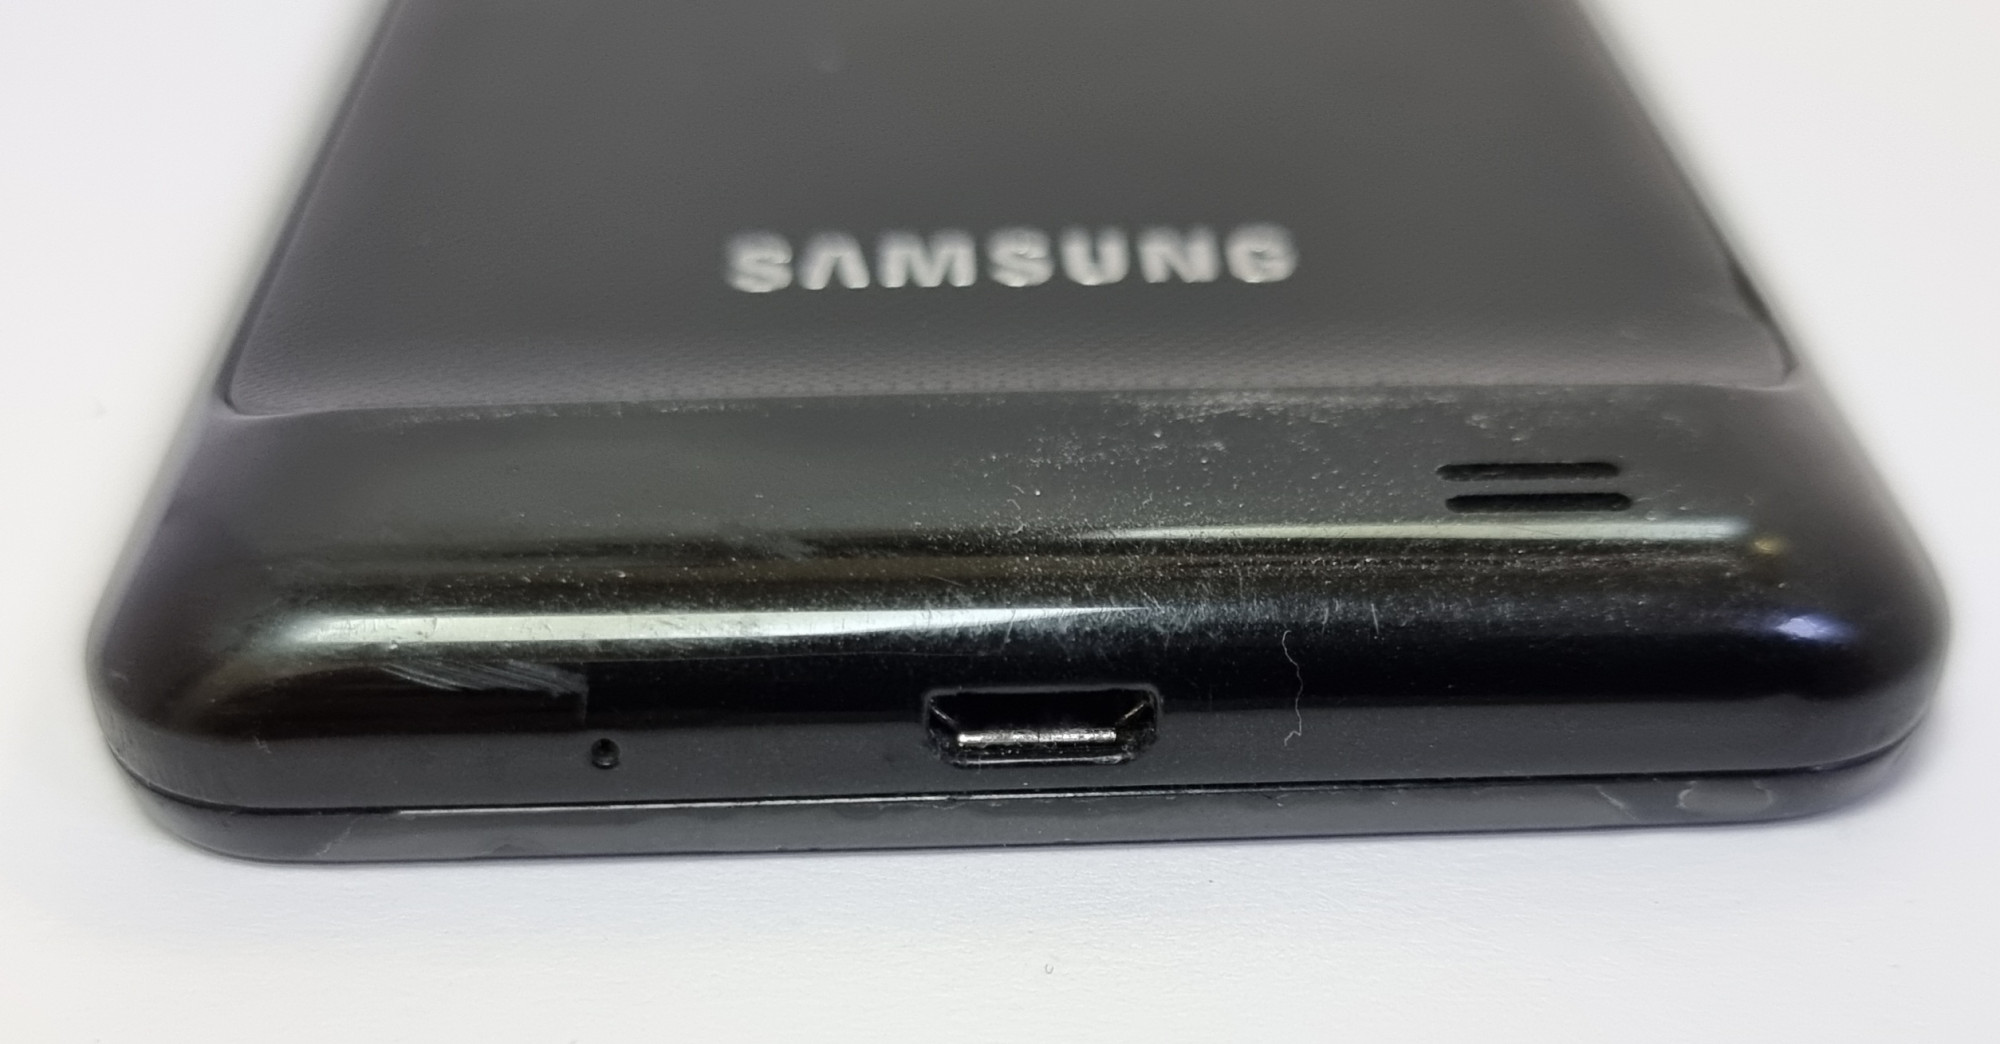 Samsung Galaxy S2 (GT-I9100) 1/16Gb 2